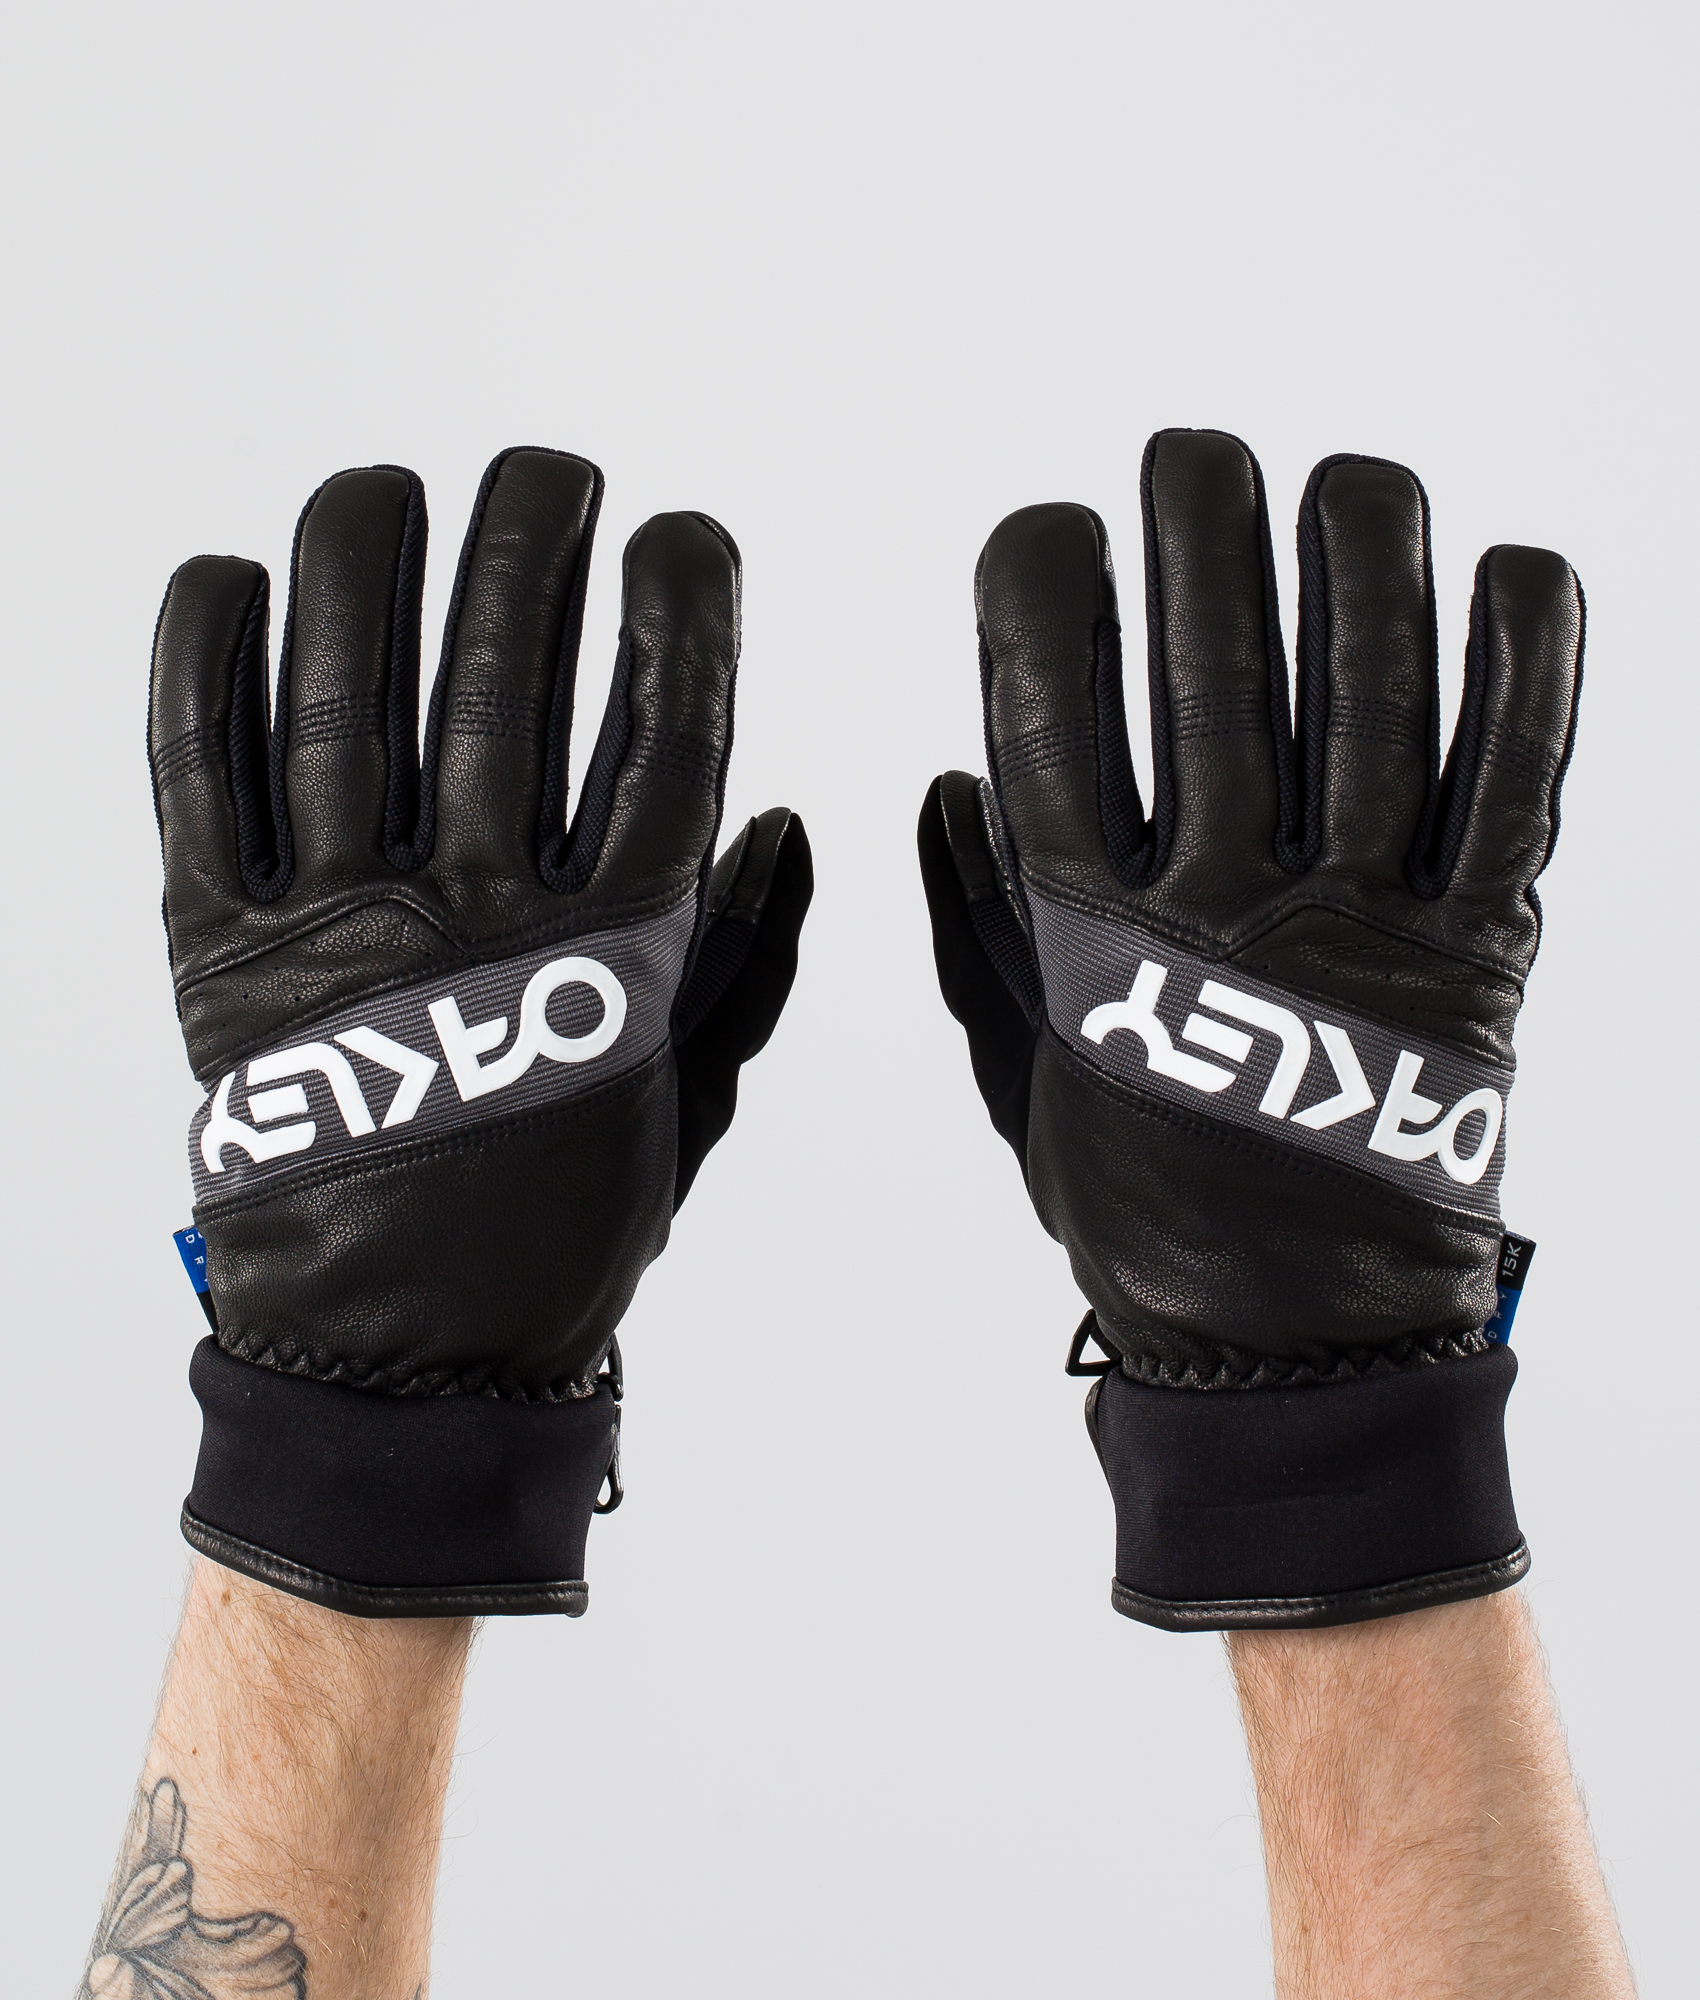 oakley factory winter 2 snow gloves